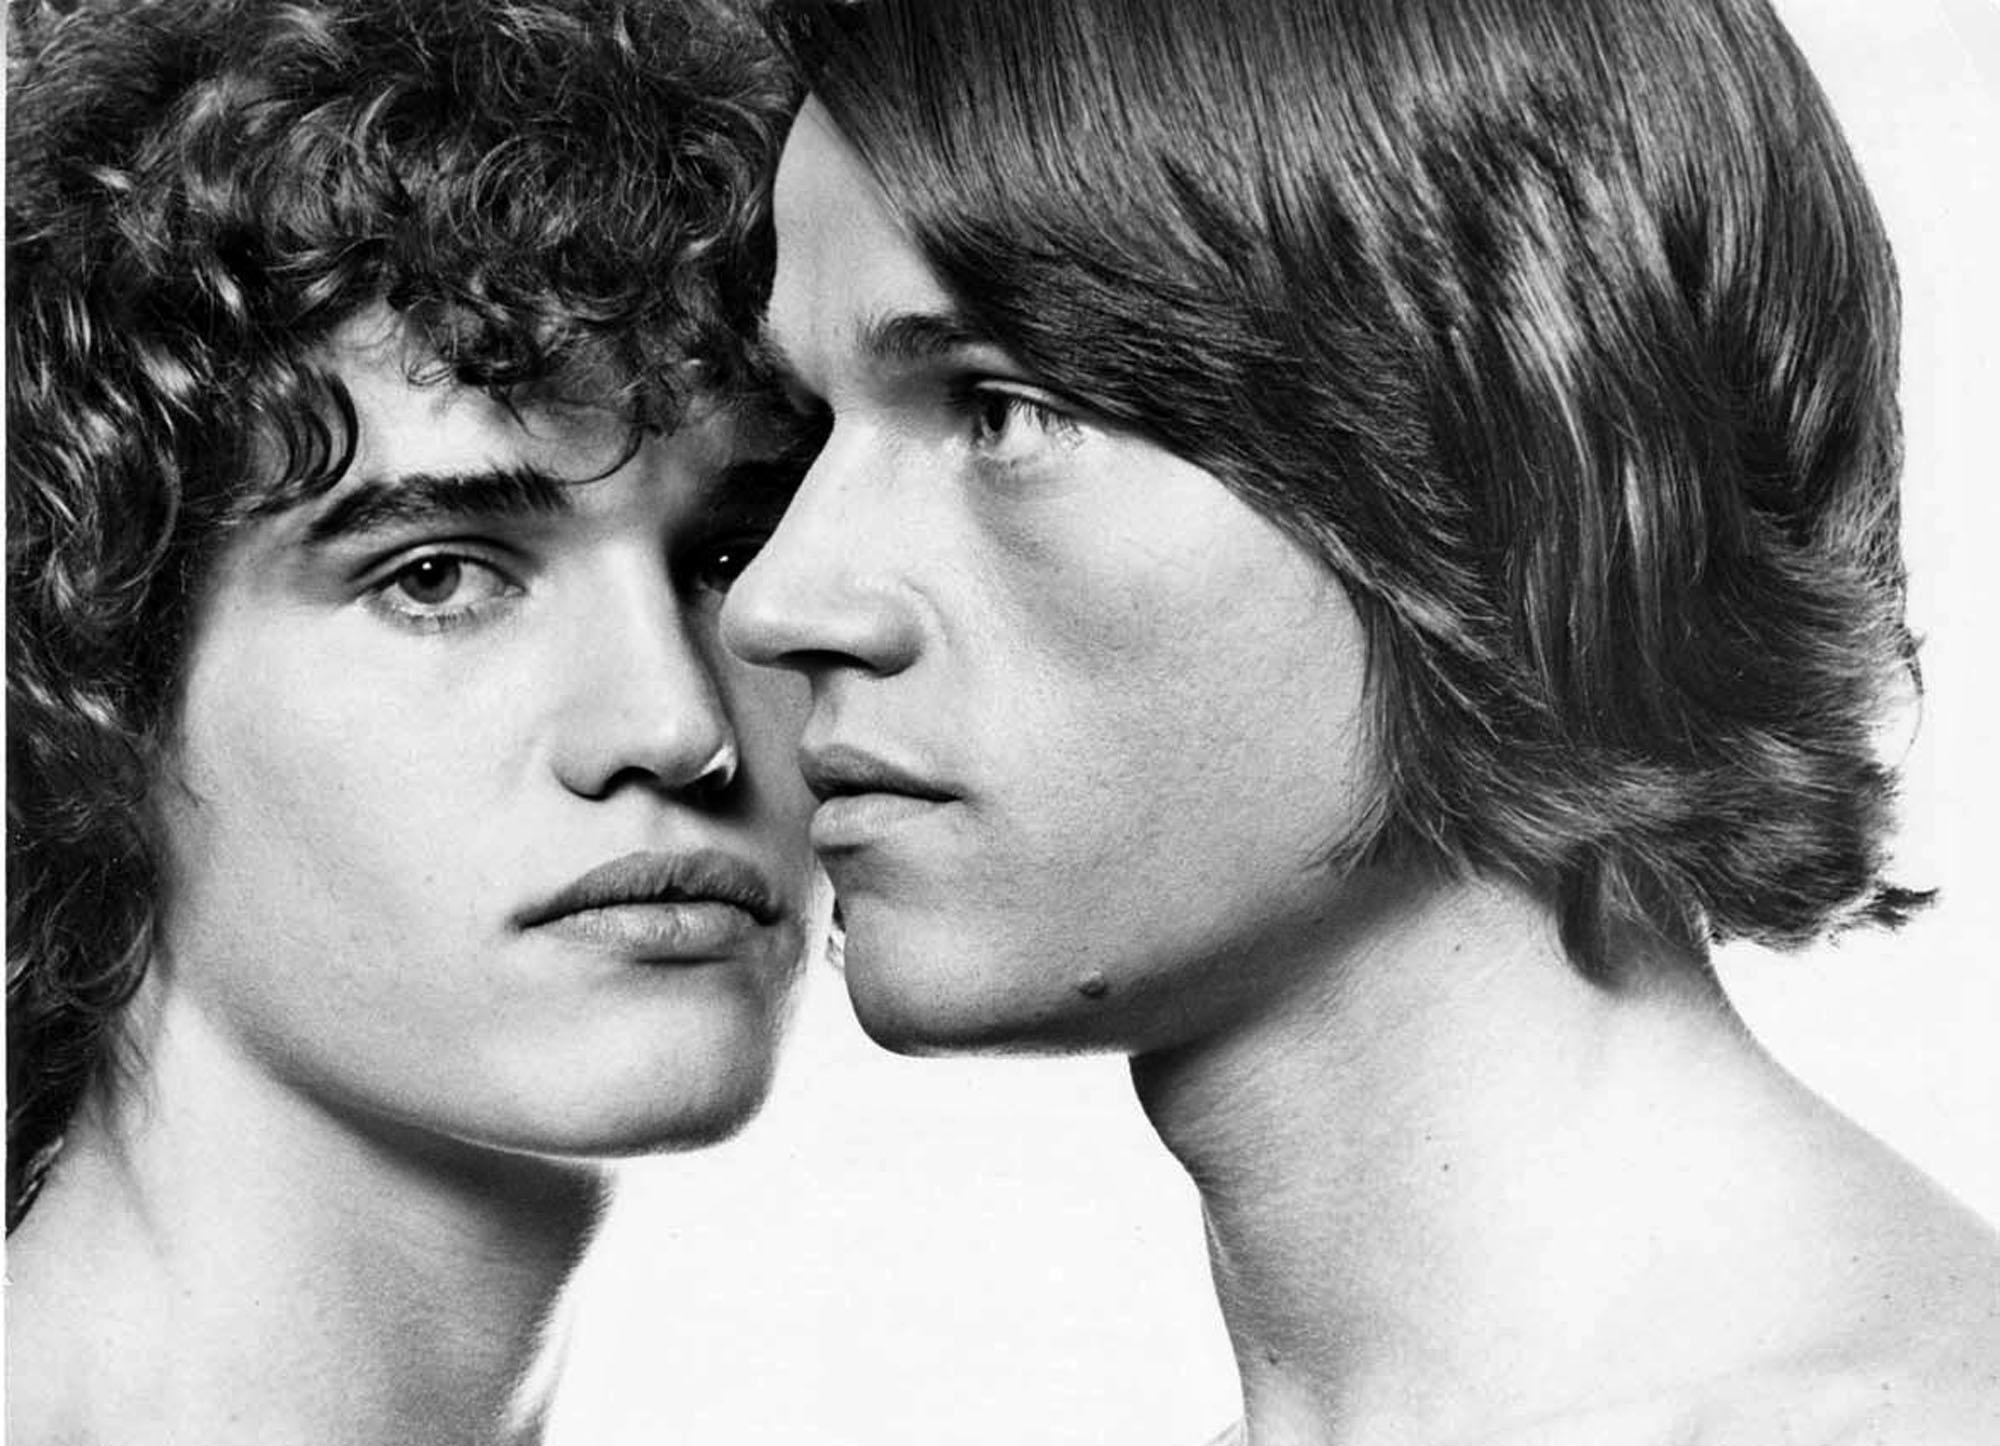  Warhol Superstar Twins Jay und Jed Johnson fotografiert für After Dark Magazine – Photograph von Jack Mitchell